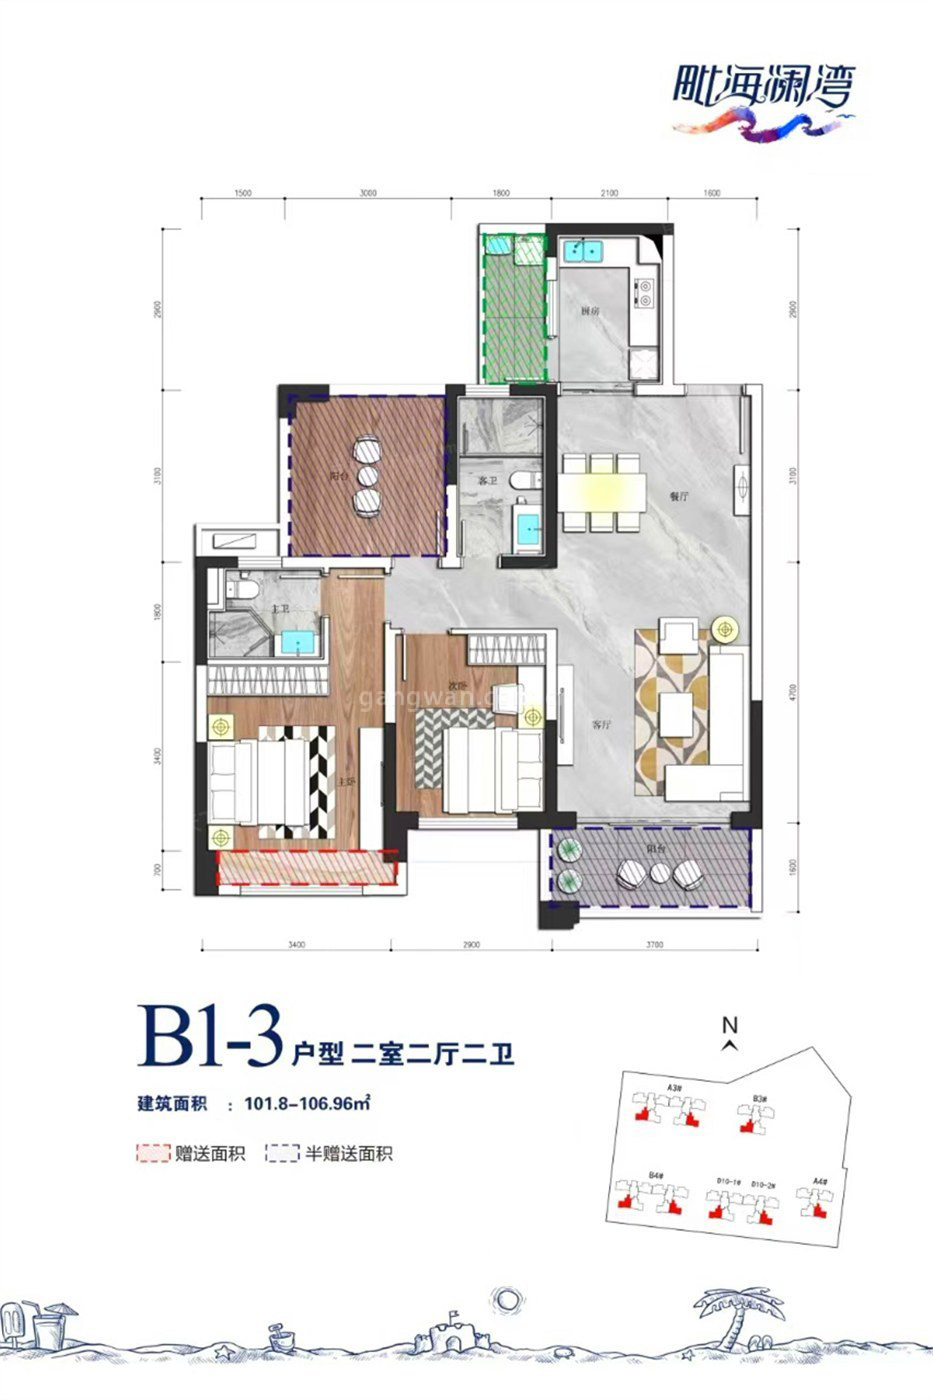 高层 B1-3户型 2室2厅2卫 建筑面积101.80-106.96㎡